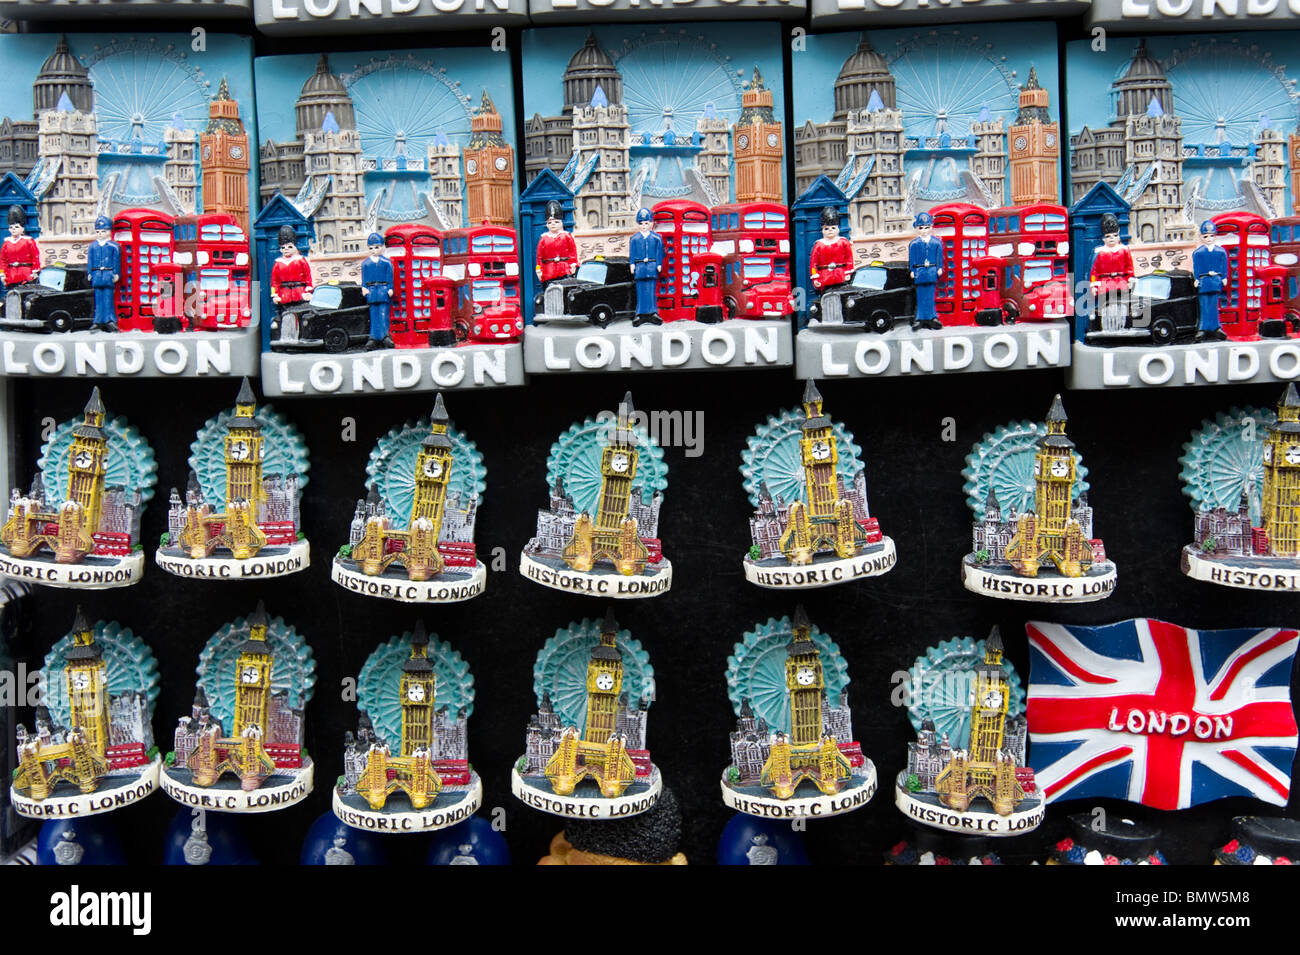 Frigo magnete souvenir di famose attrazioni turistiche di Londra, Inghilterra, Regno Unito Foto Stock